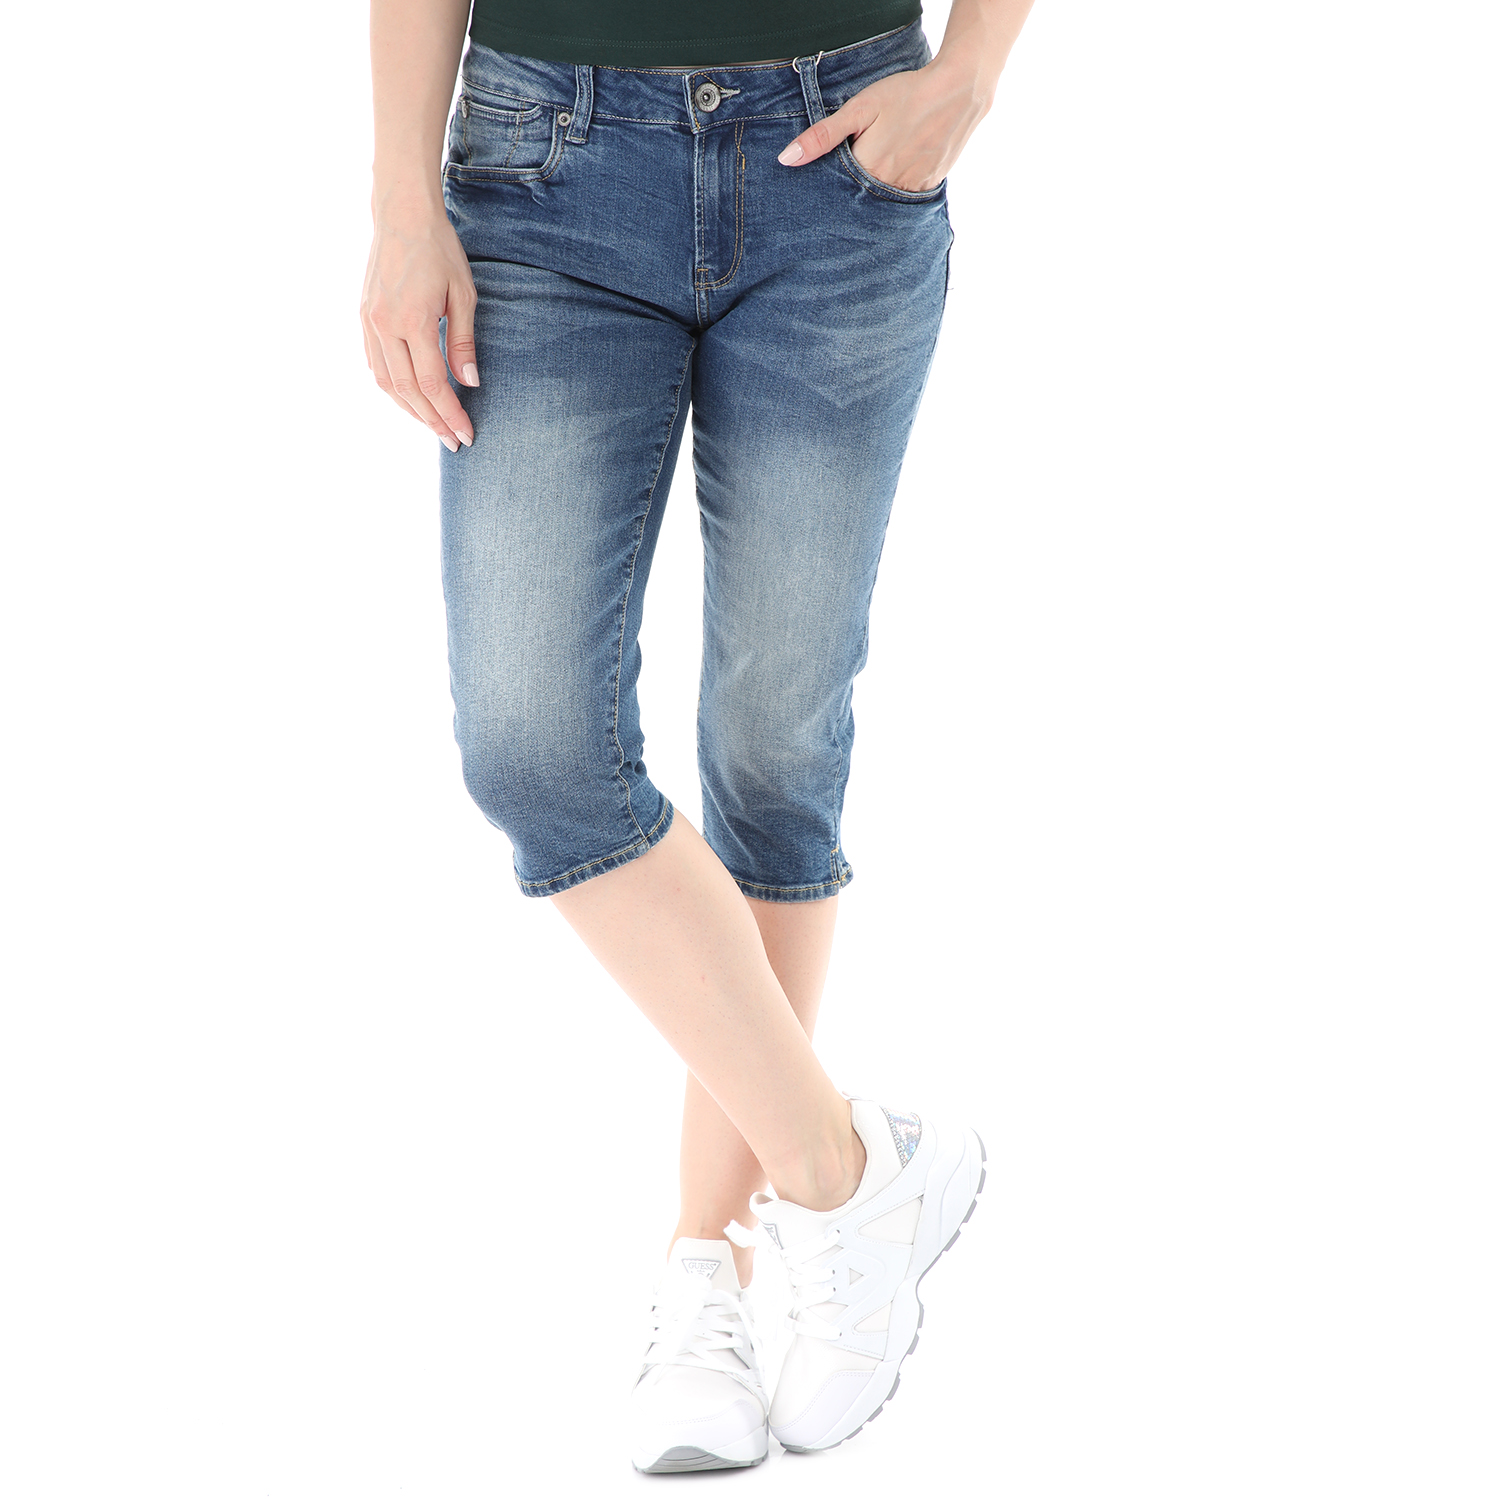 Γυναικεία/Ρούχα/Τζίν/Βερμούδες-Σόρτς GARCIA JEANS - Γυναικείο κάπρι jean παντελόνι GARCIA JEANS Rachelle μπλε